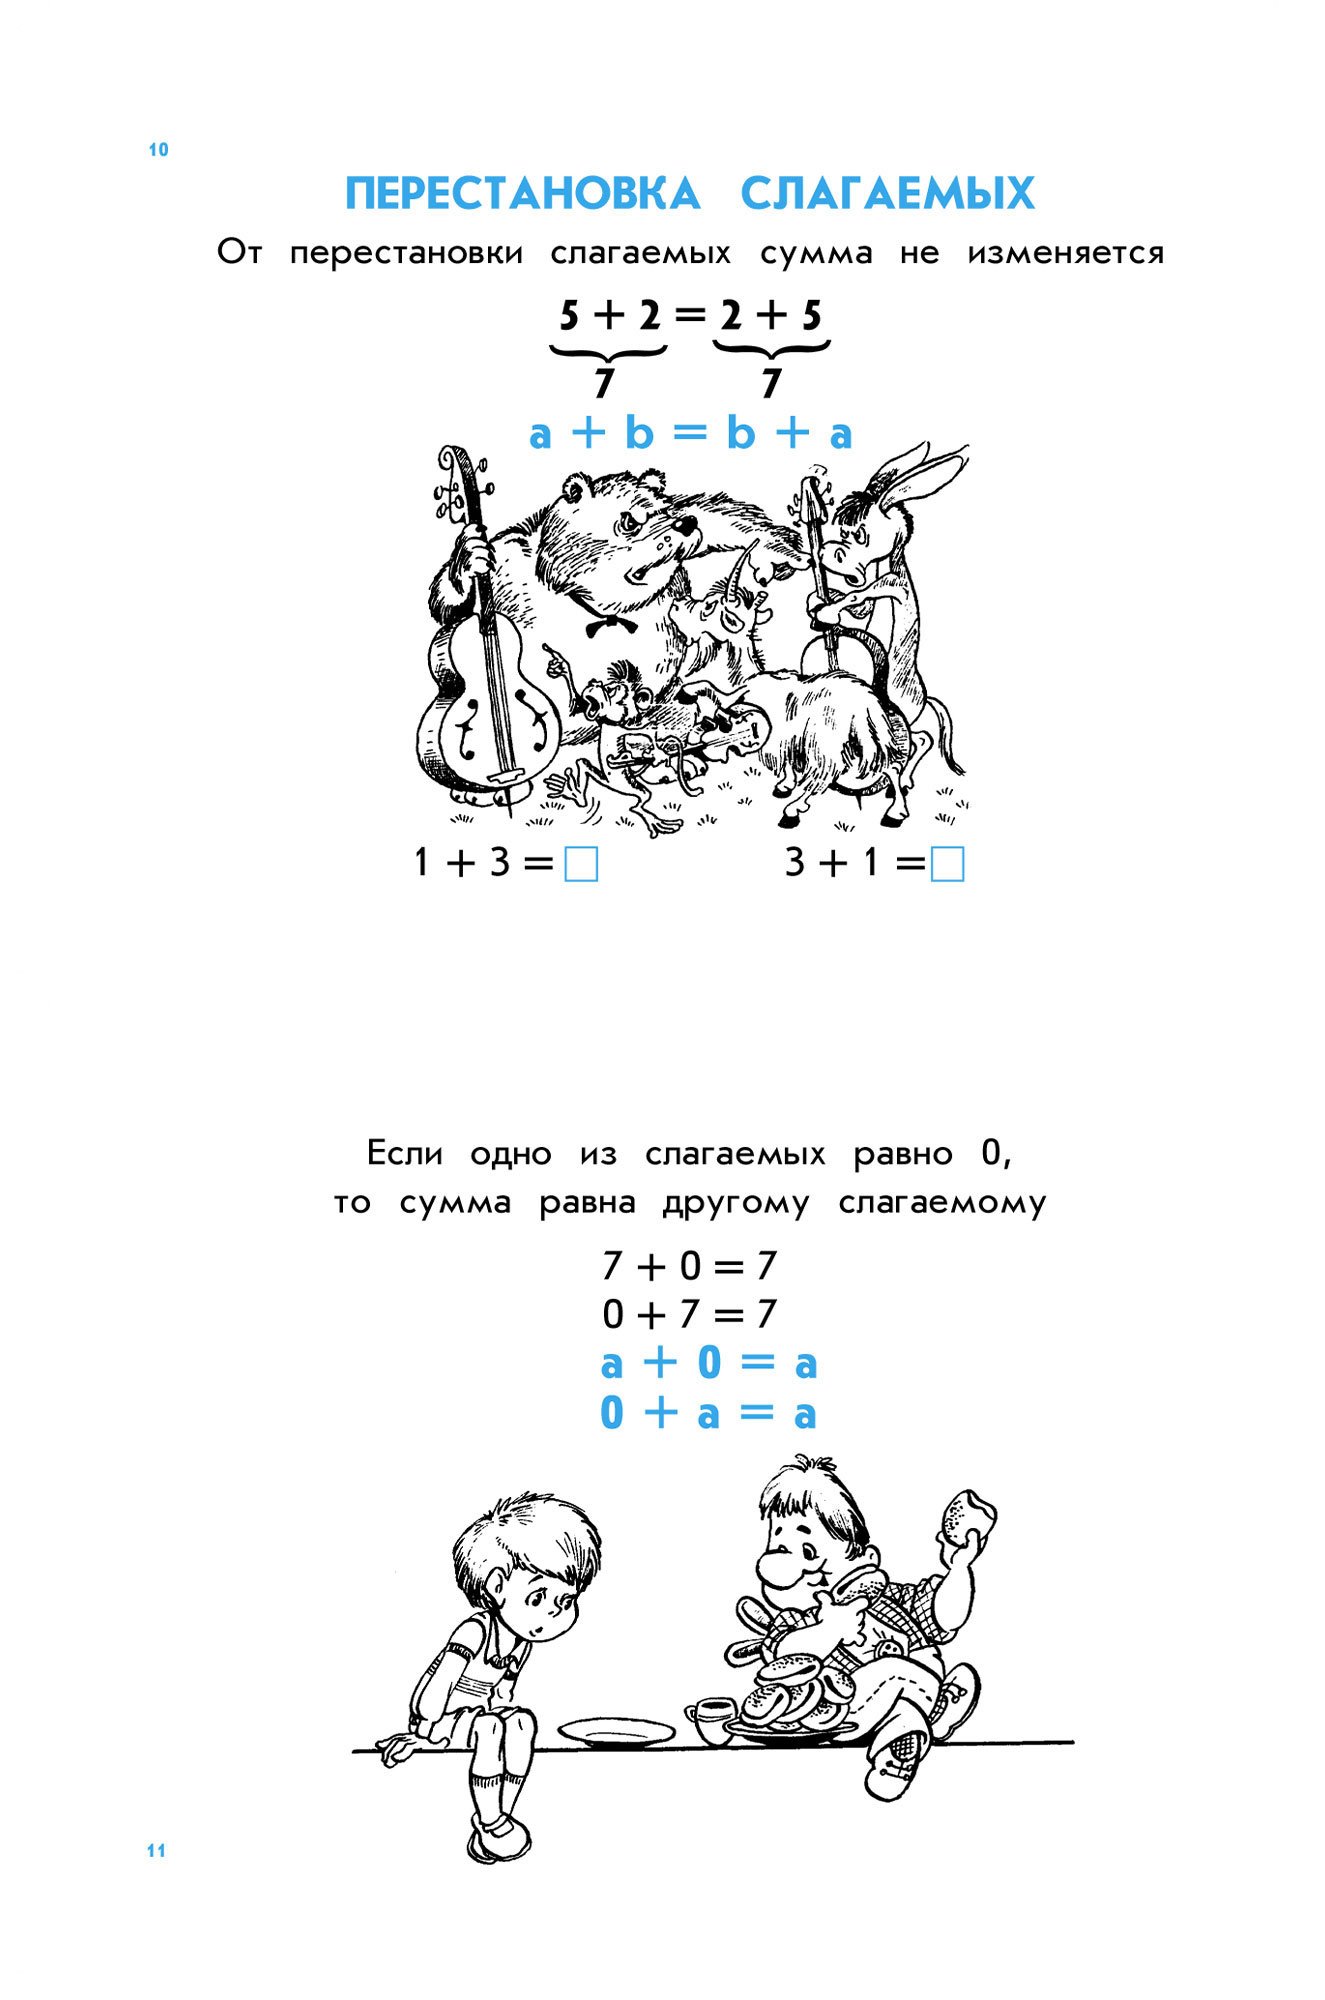 Сборник правил по русскому языку и математике для начальных классов 128 стр. Стрекоза